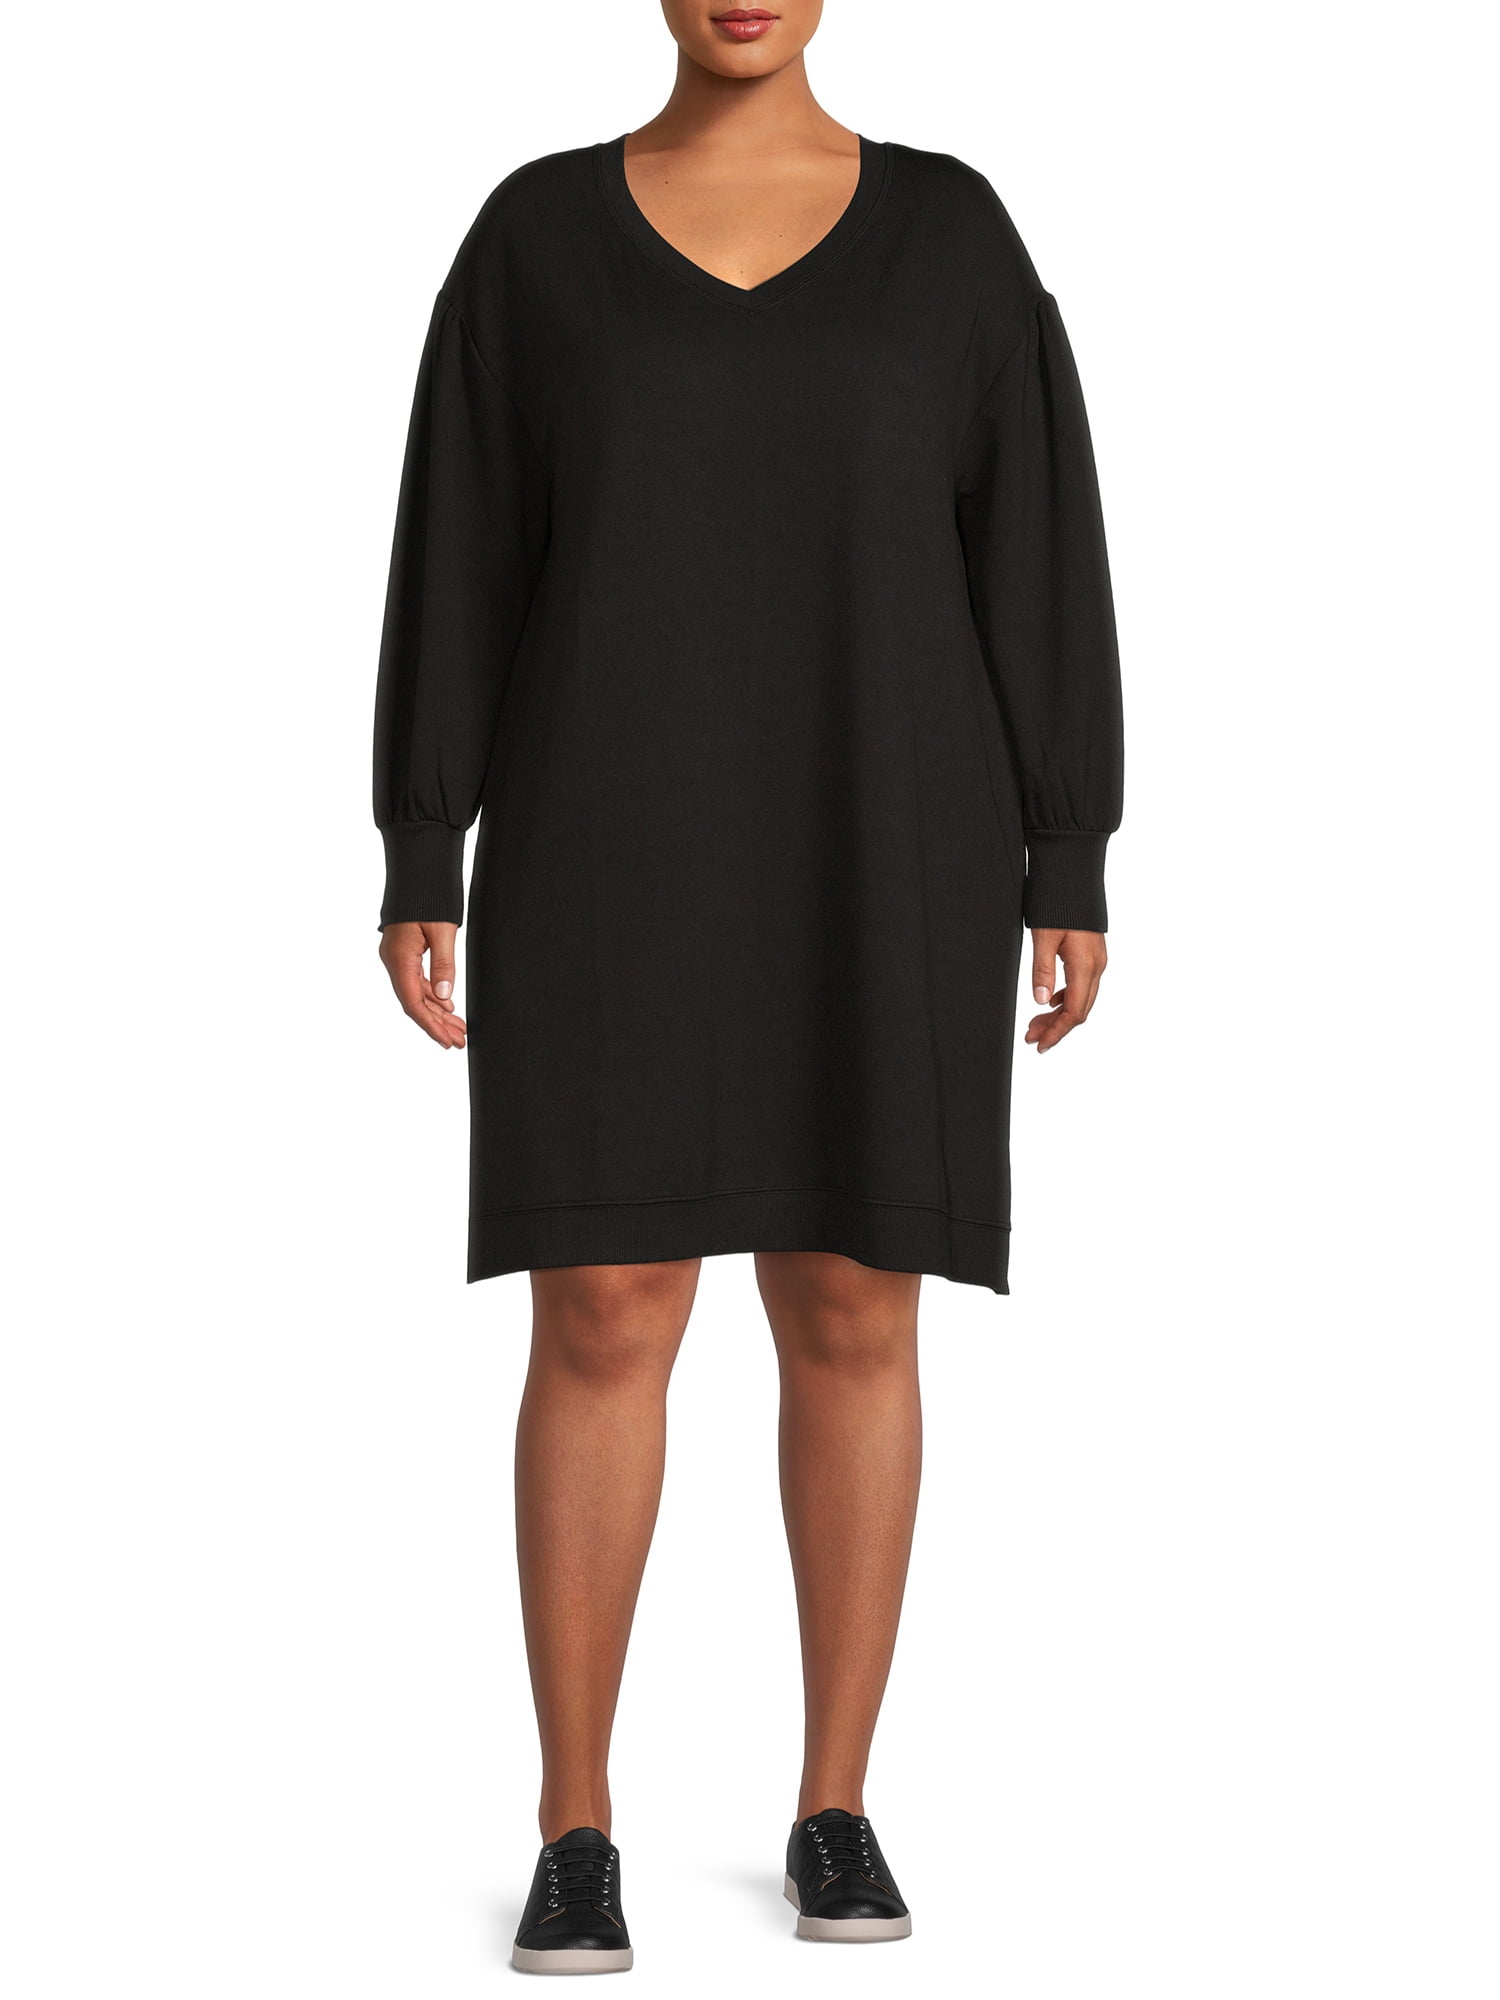 Terra & Sky Women's Plus Size V-Neck Sweatshirt Dress